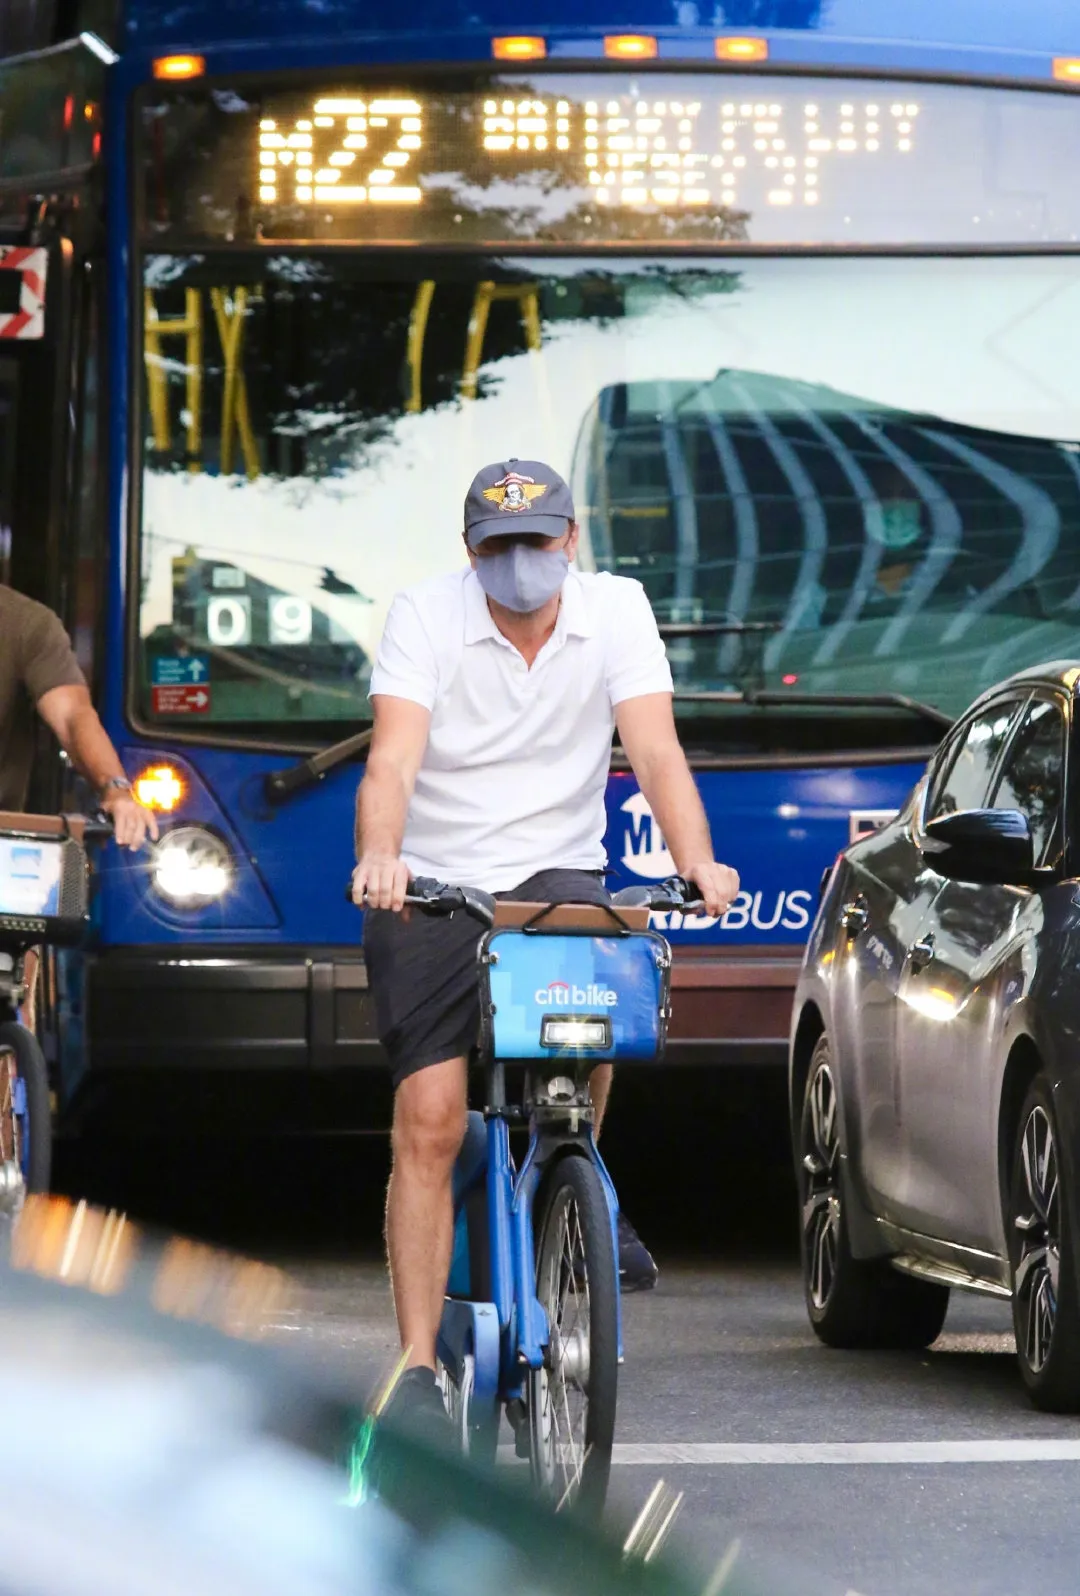 Leonardo DiCaprio rides a shared bike | FMV6